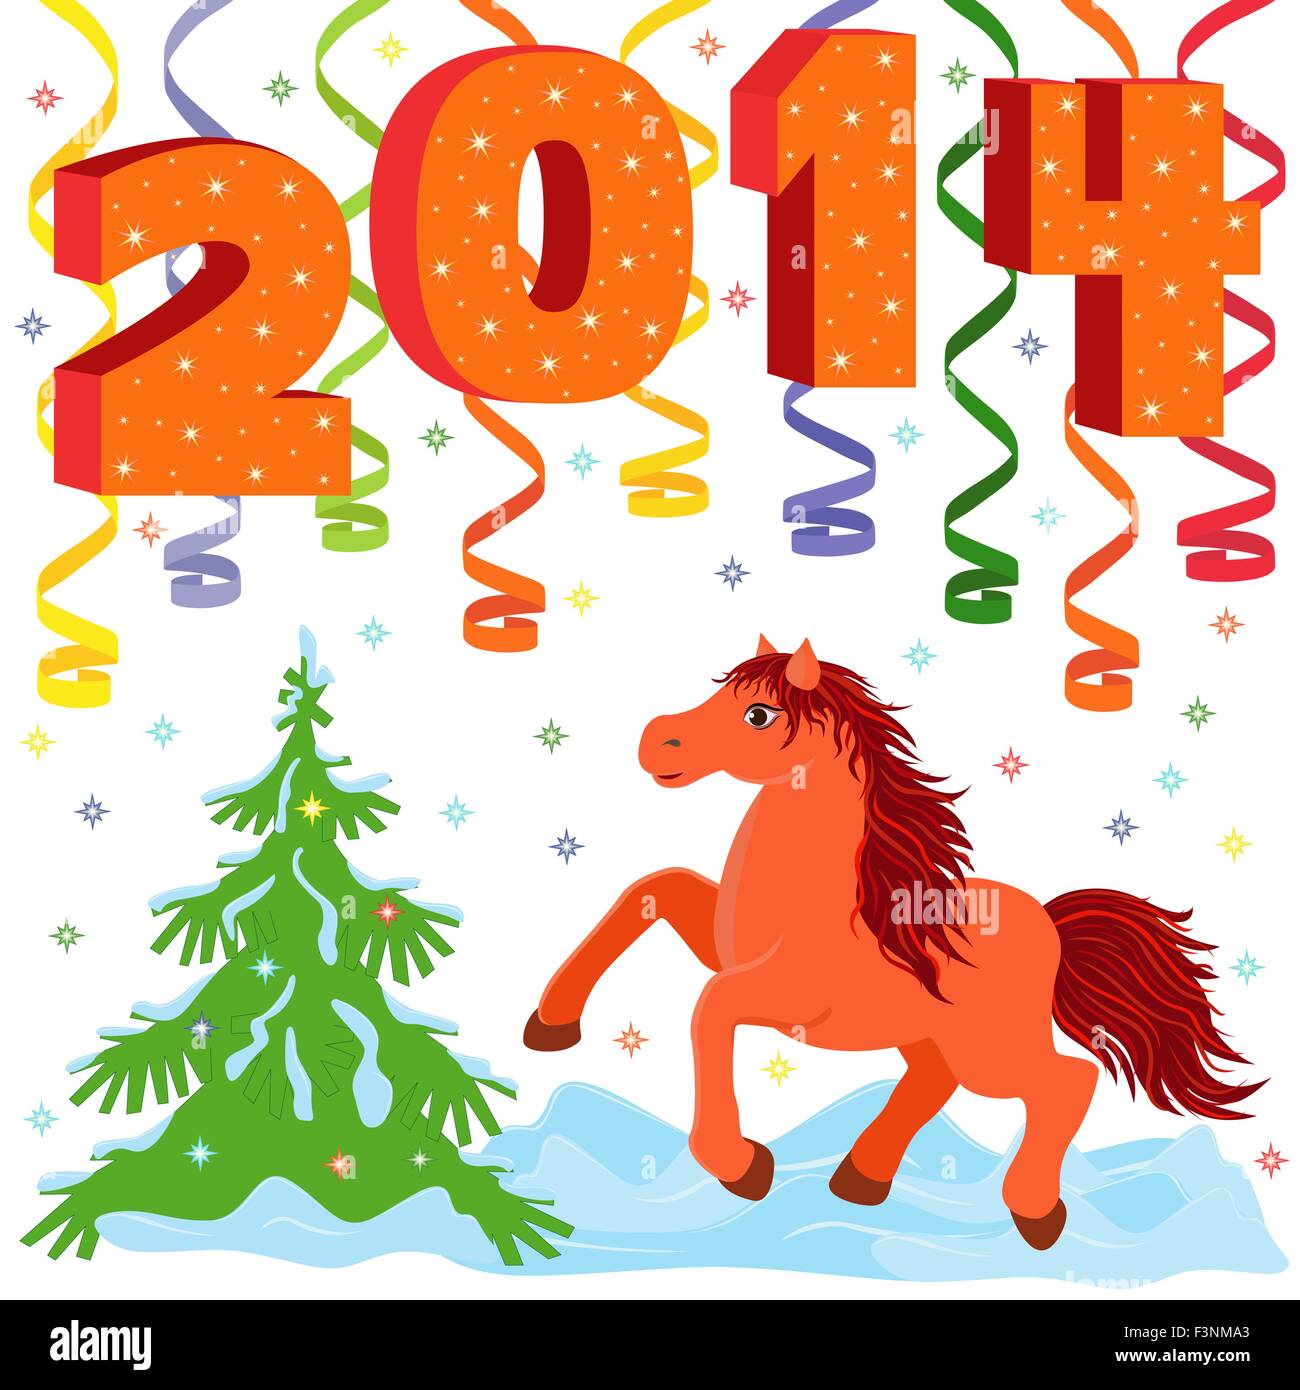 Neujahr-Zusammensetzung und Symbol 2014 Jahr a Running Horse, hand Zeichnung Vektor-Illustration Stock Vektor